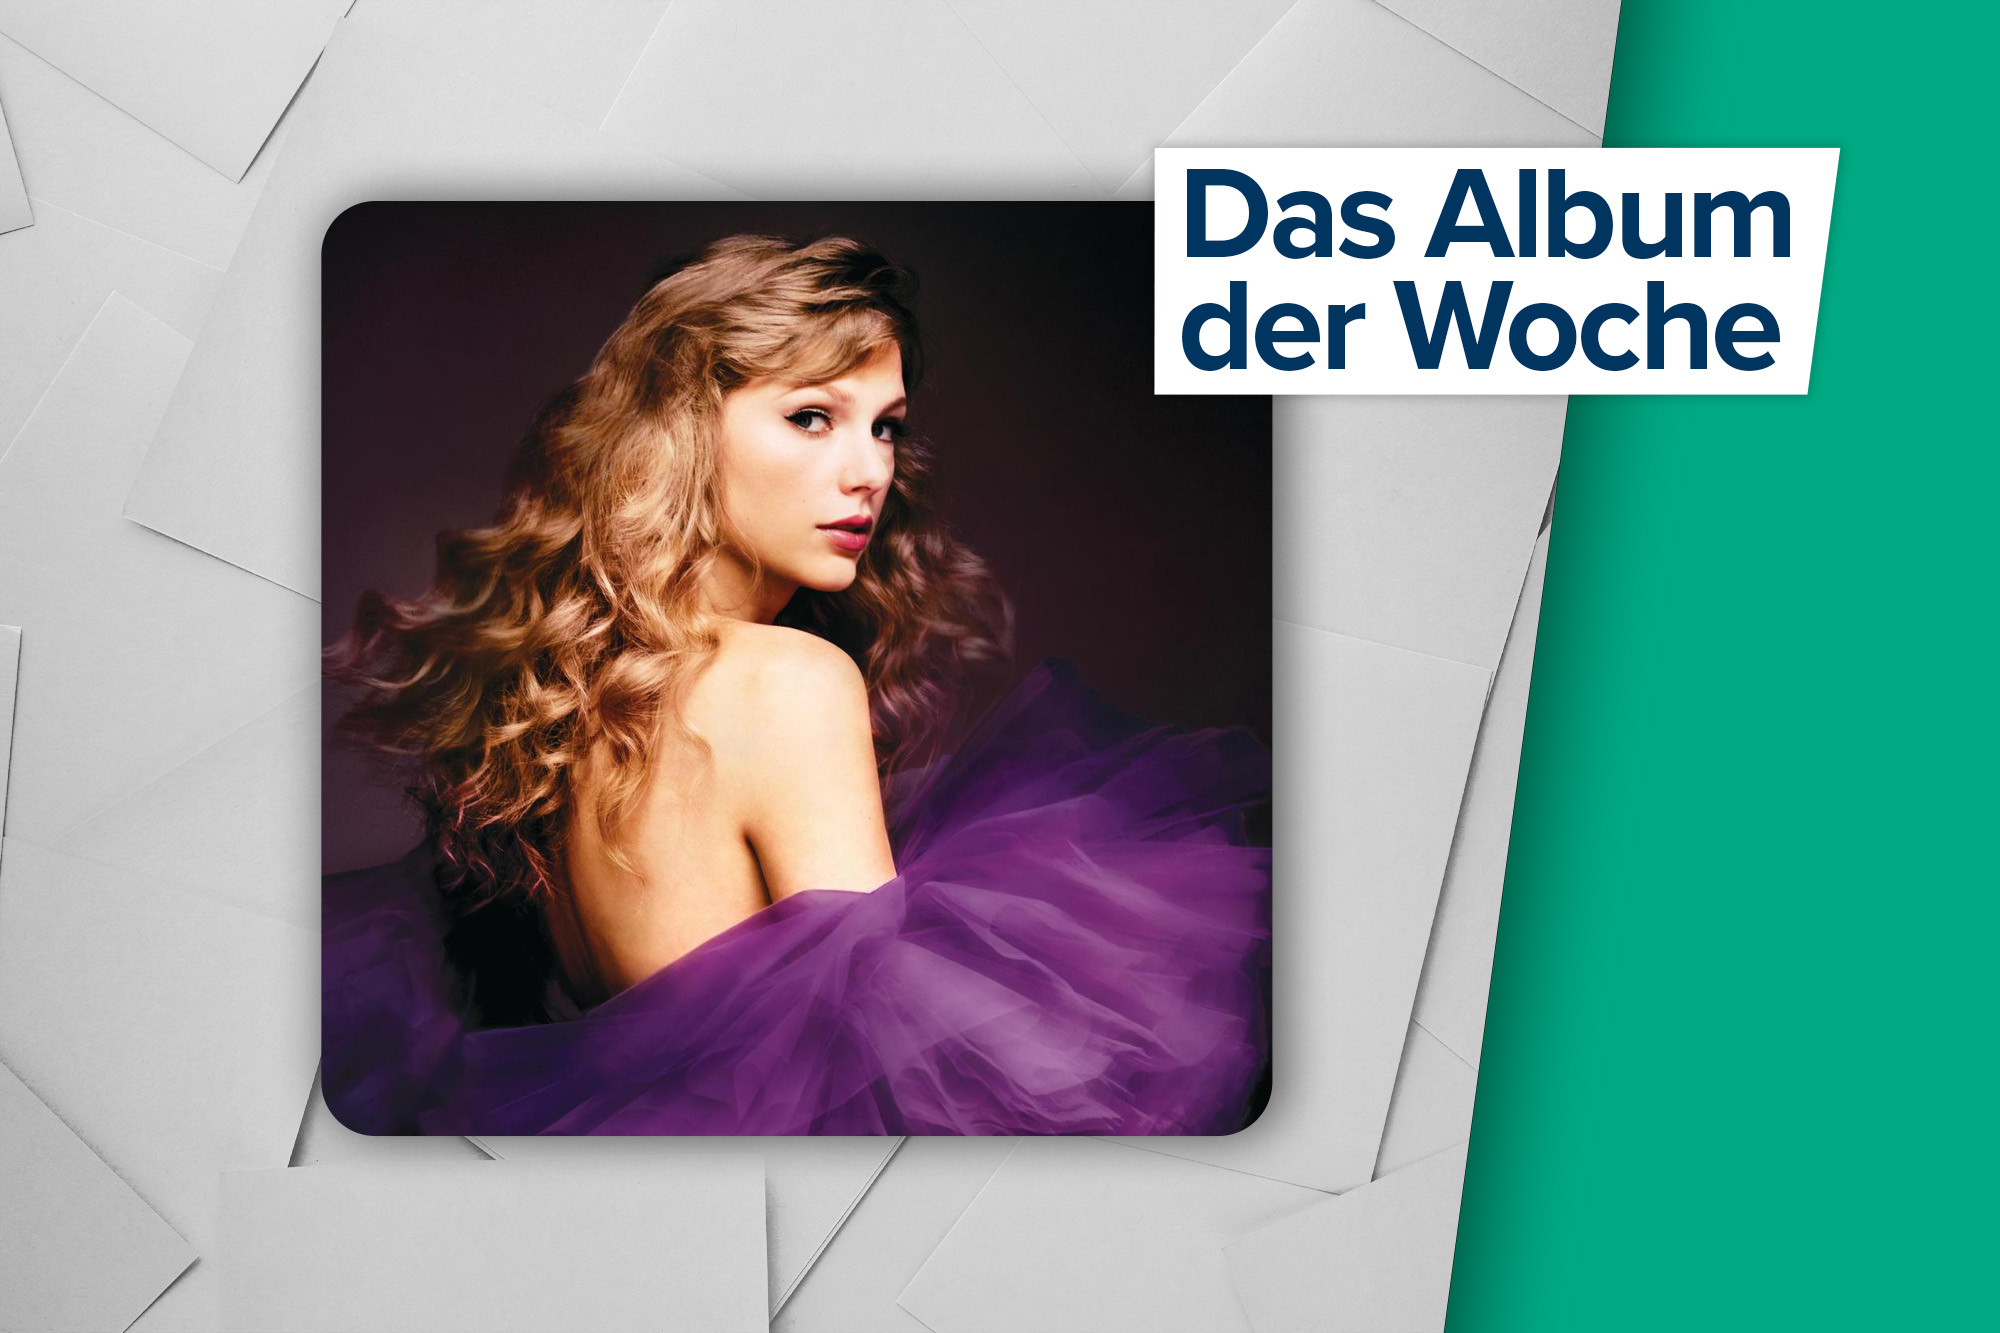 Das Album der Woche: "Speak Now (Taylor's Version)" von Taylor Swift (Label: UMI/ Republic)